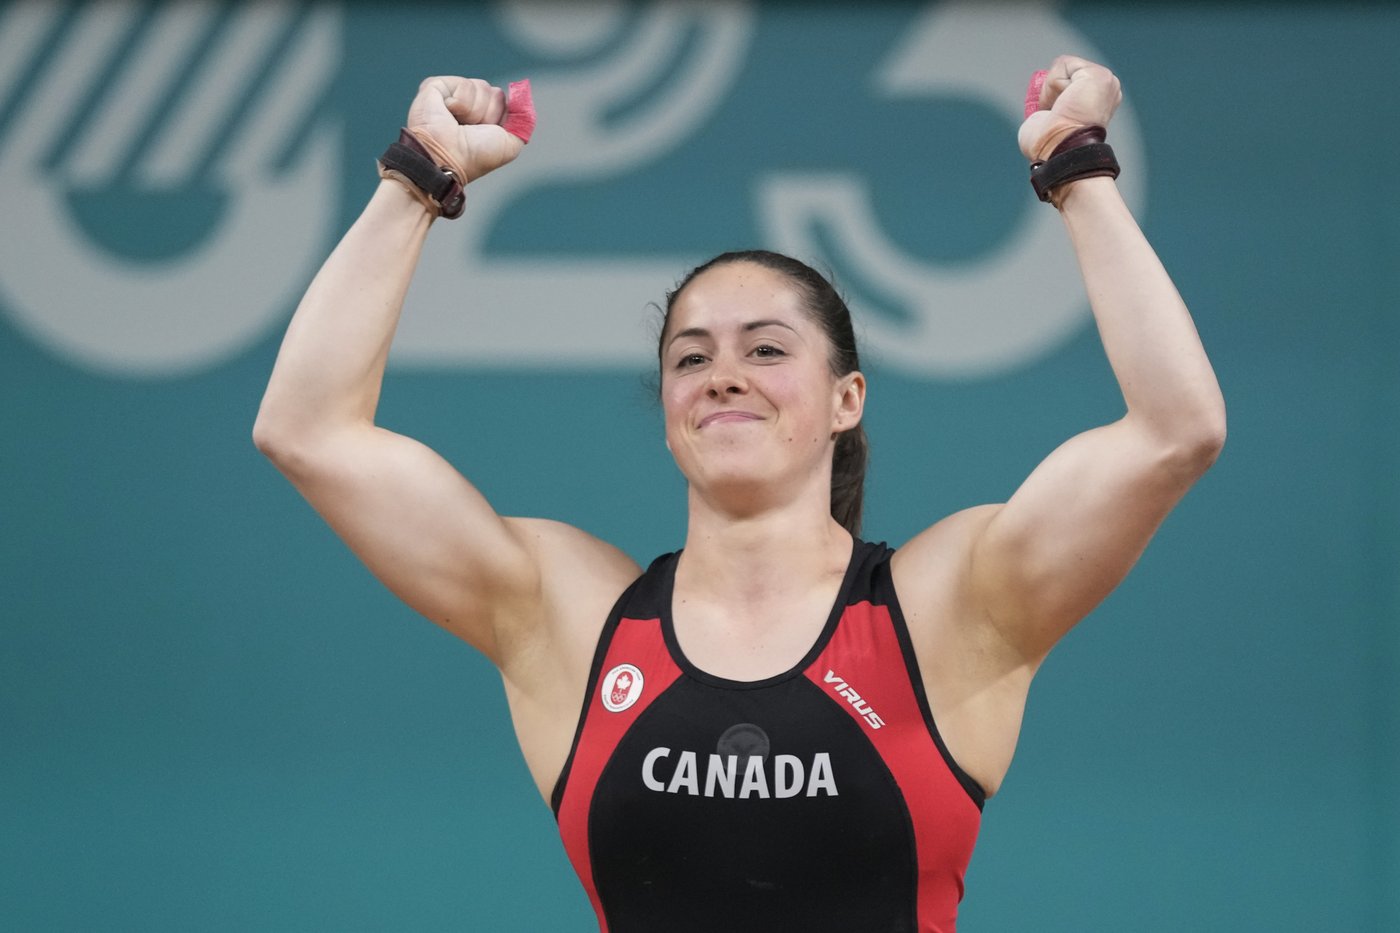 Cinquante-huit athlètes québécois représenteront le pays aux JO de Paris